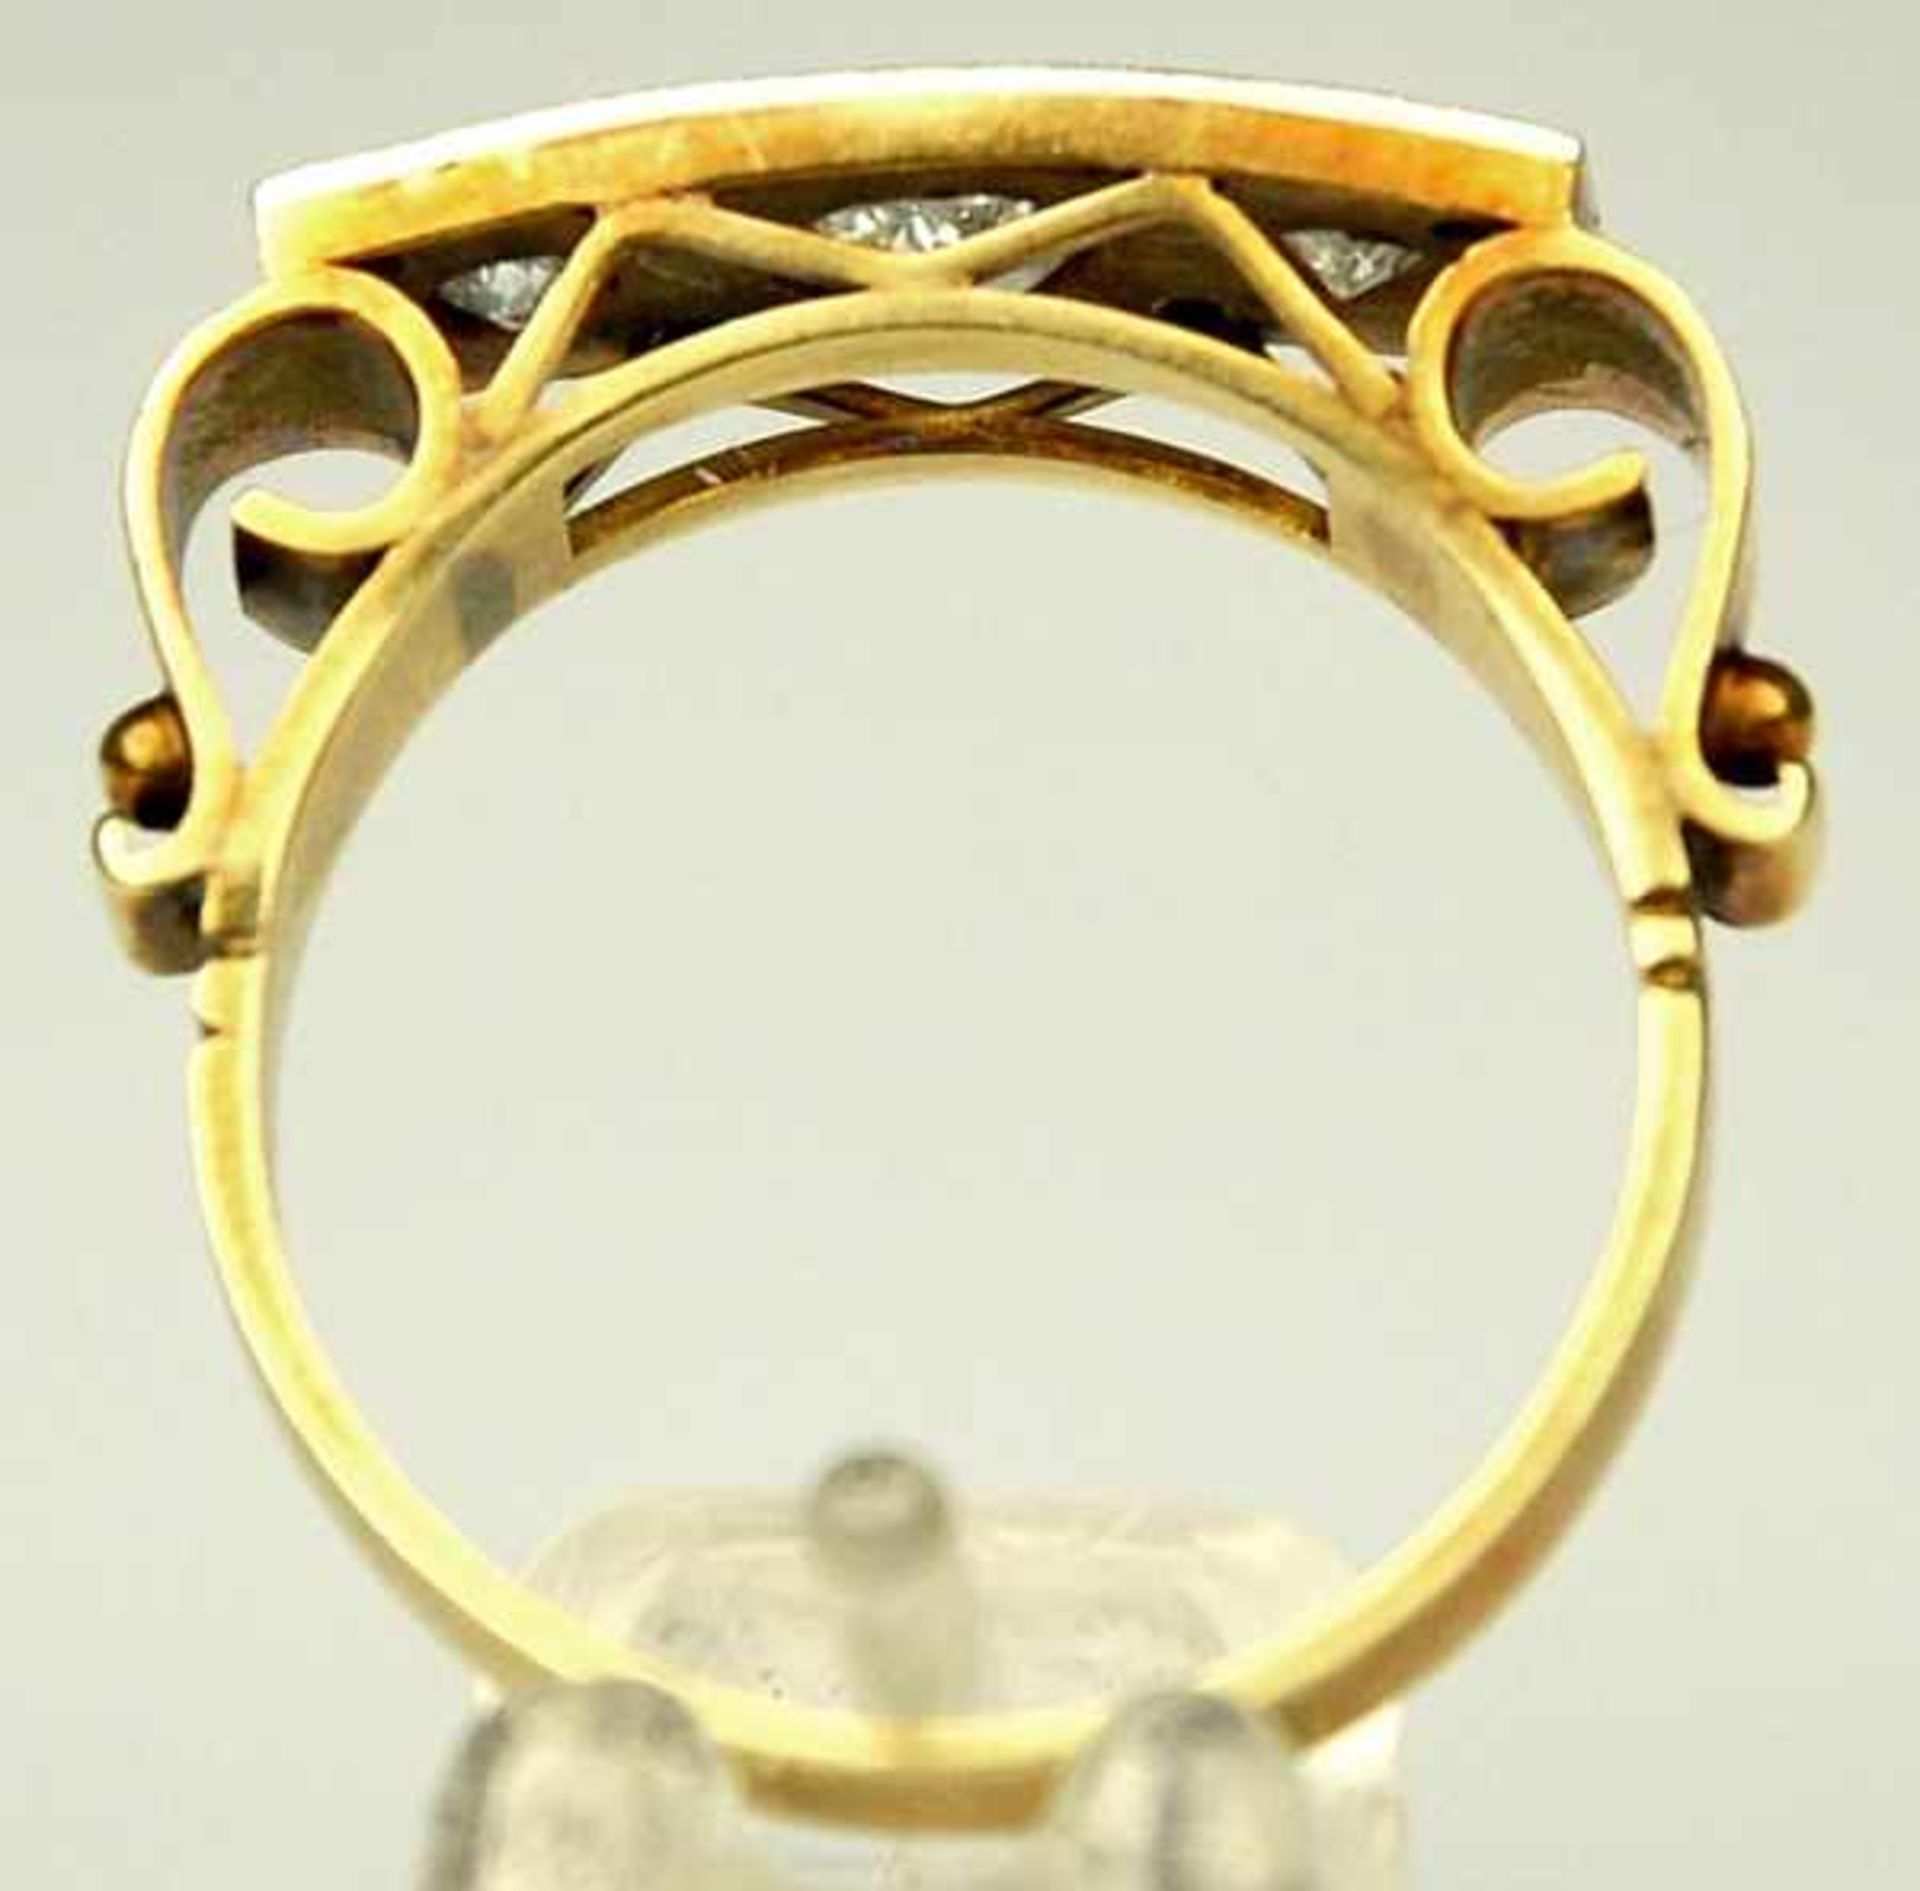 DIAMANT-RING rechteckige Schauseite besetzt mit 3 grösseren Altschliffdiamanten um 0,7-0,75ct, - Image 4 of 5